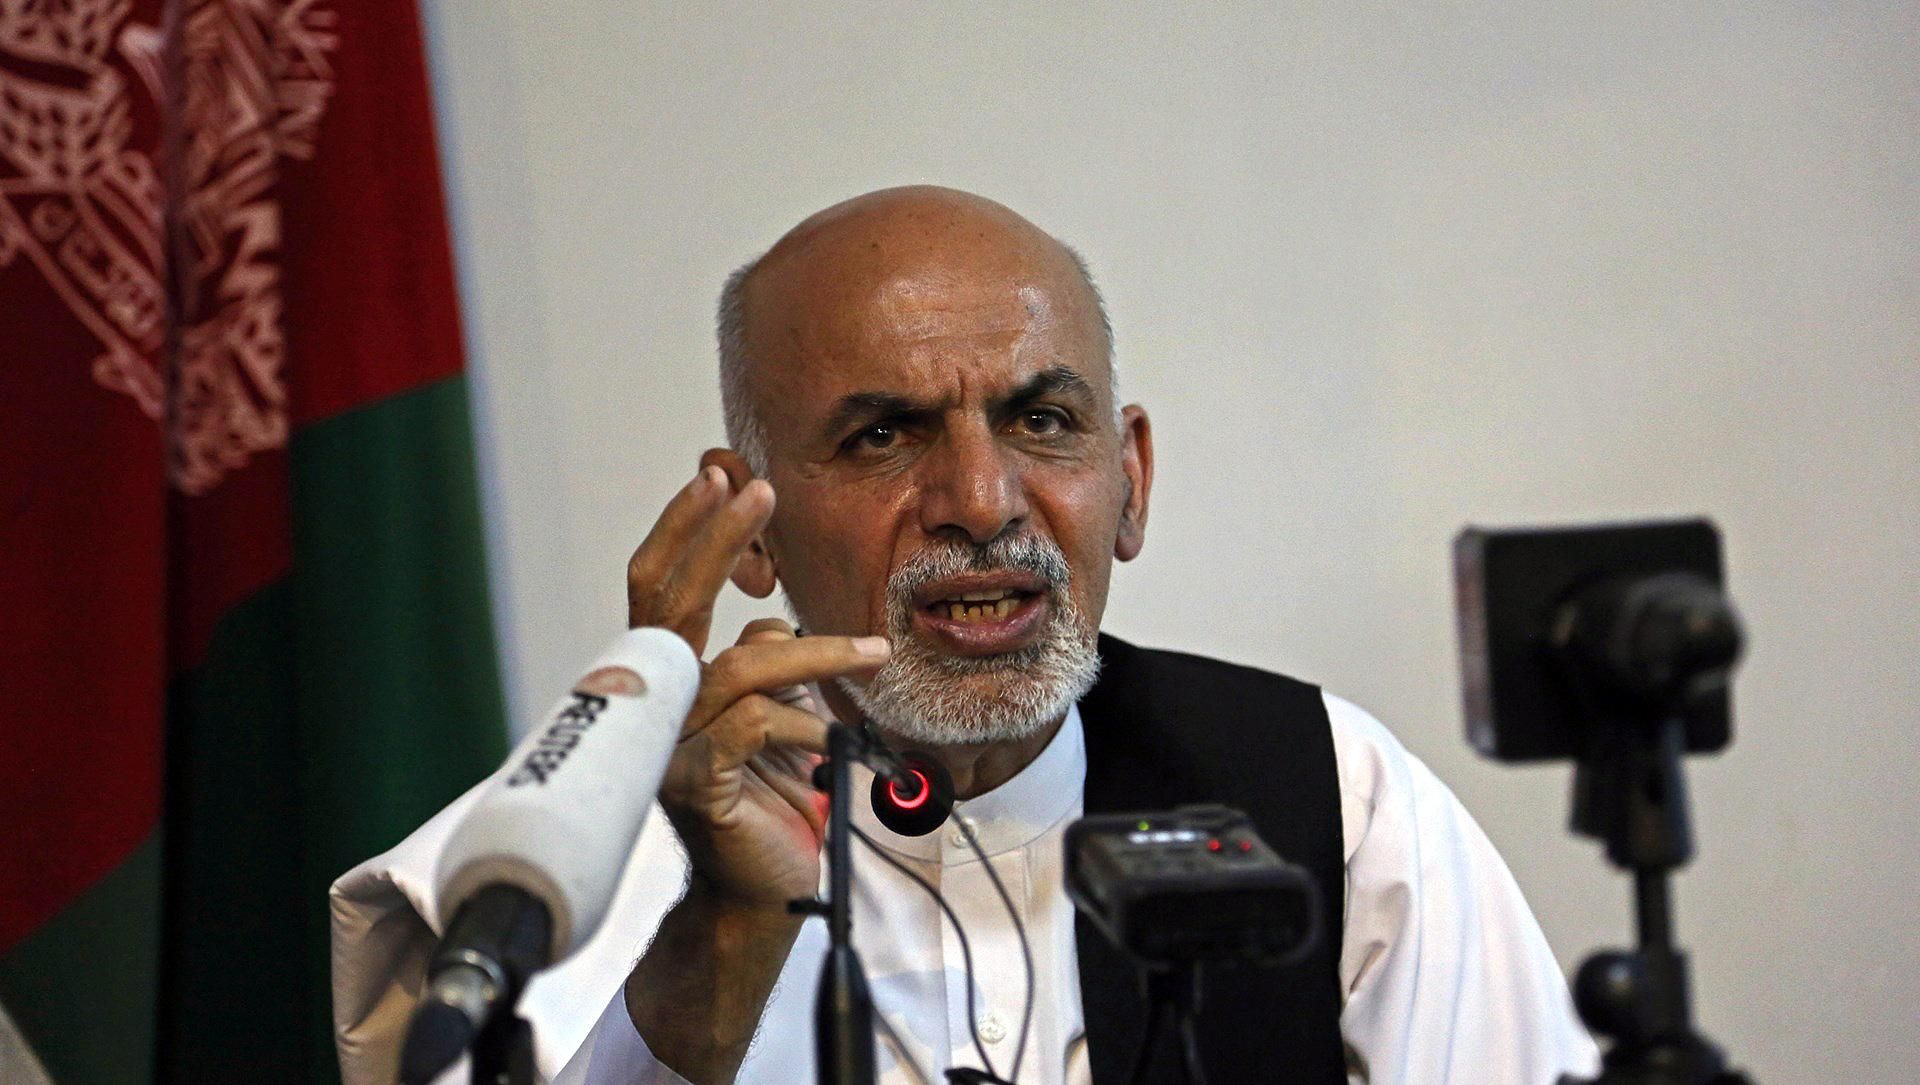 Президент Афганістану оголосив про припинення перемир'я з "Талібаном"